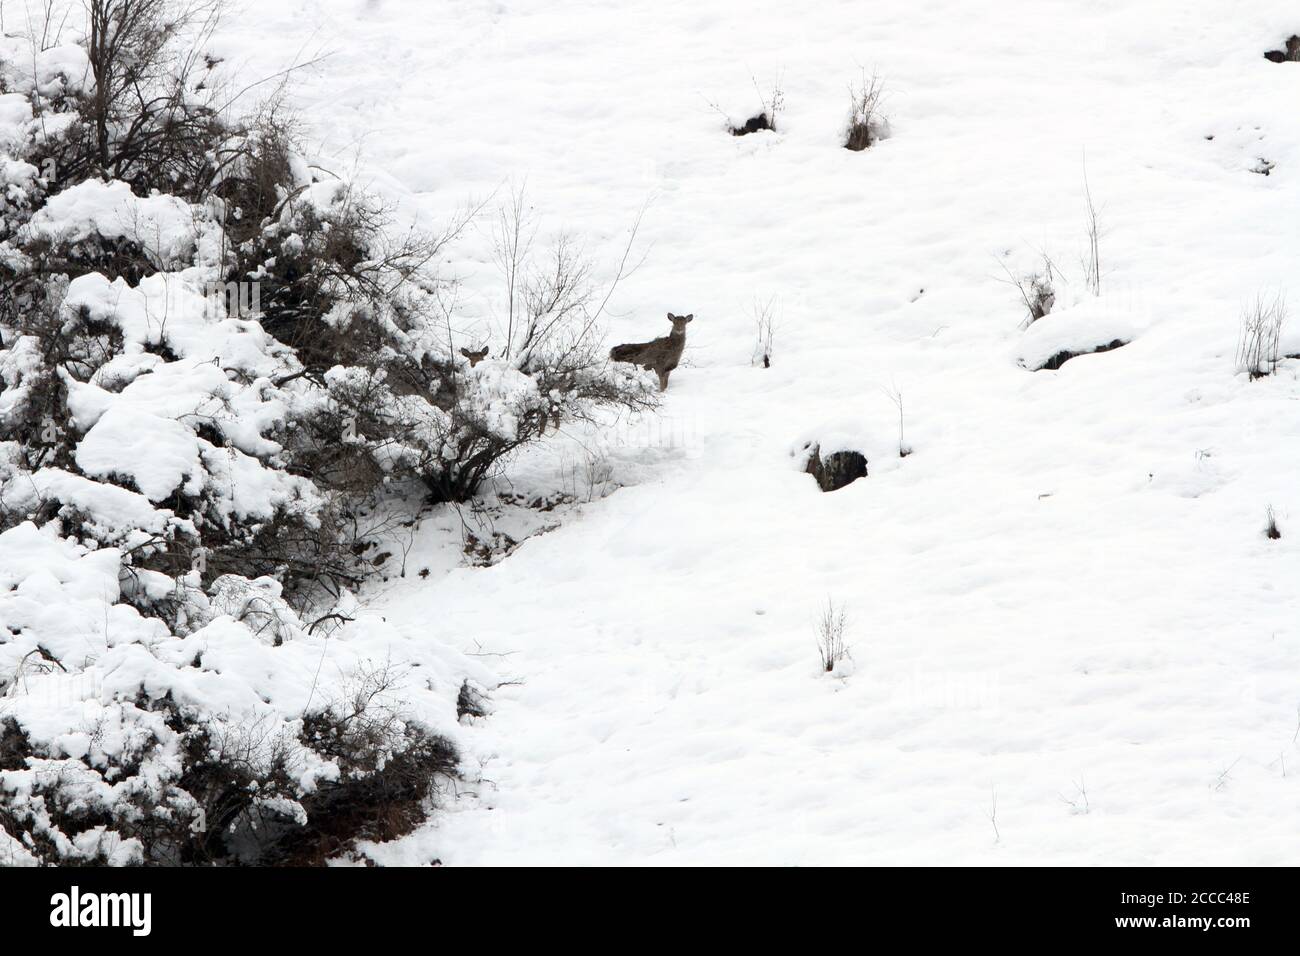 Cerf de Kashmir ou cerf de Hangul (Cervus canadensis hanglu) dans la neige Banque D'Images